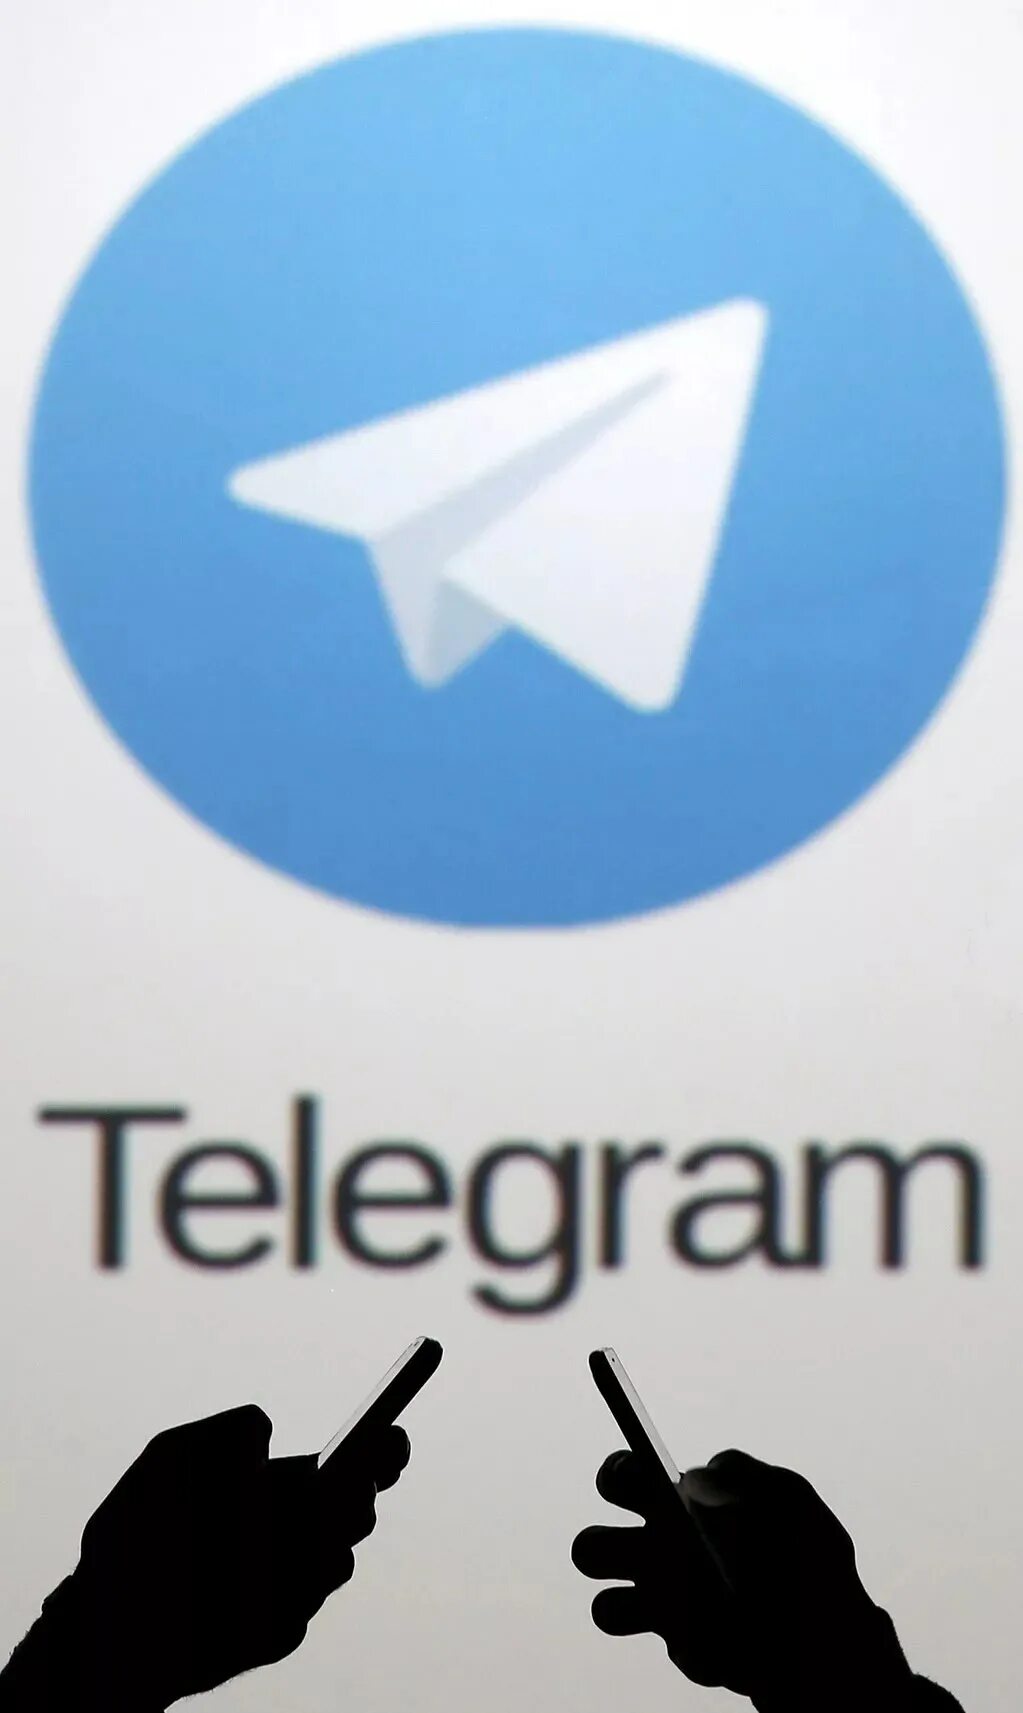 Telegram pictures. Картинка телеграмм. Иконка телеграмм. Логотип Telegram. Телеграмм вертикальная.